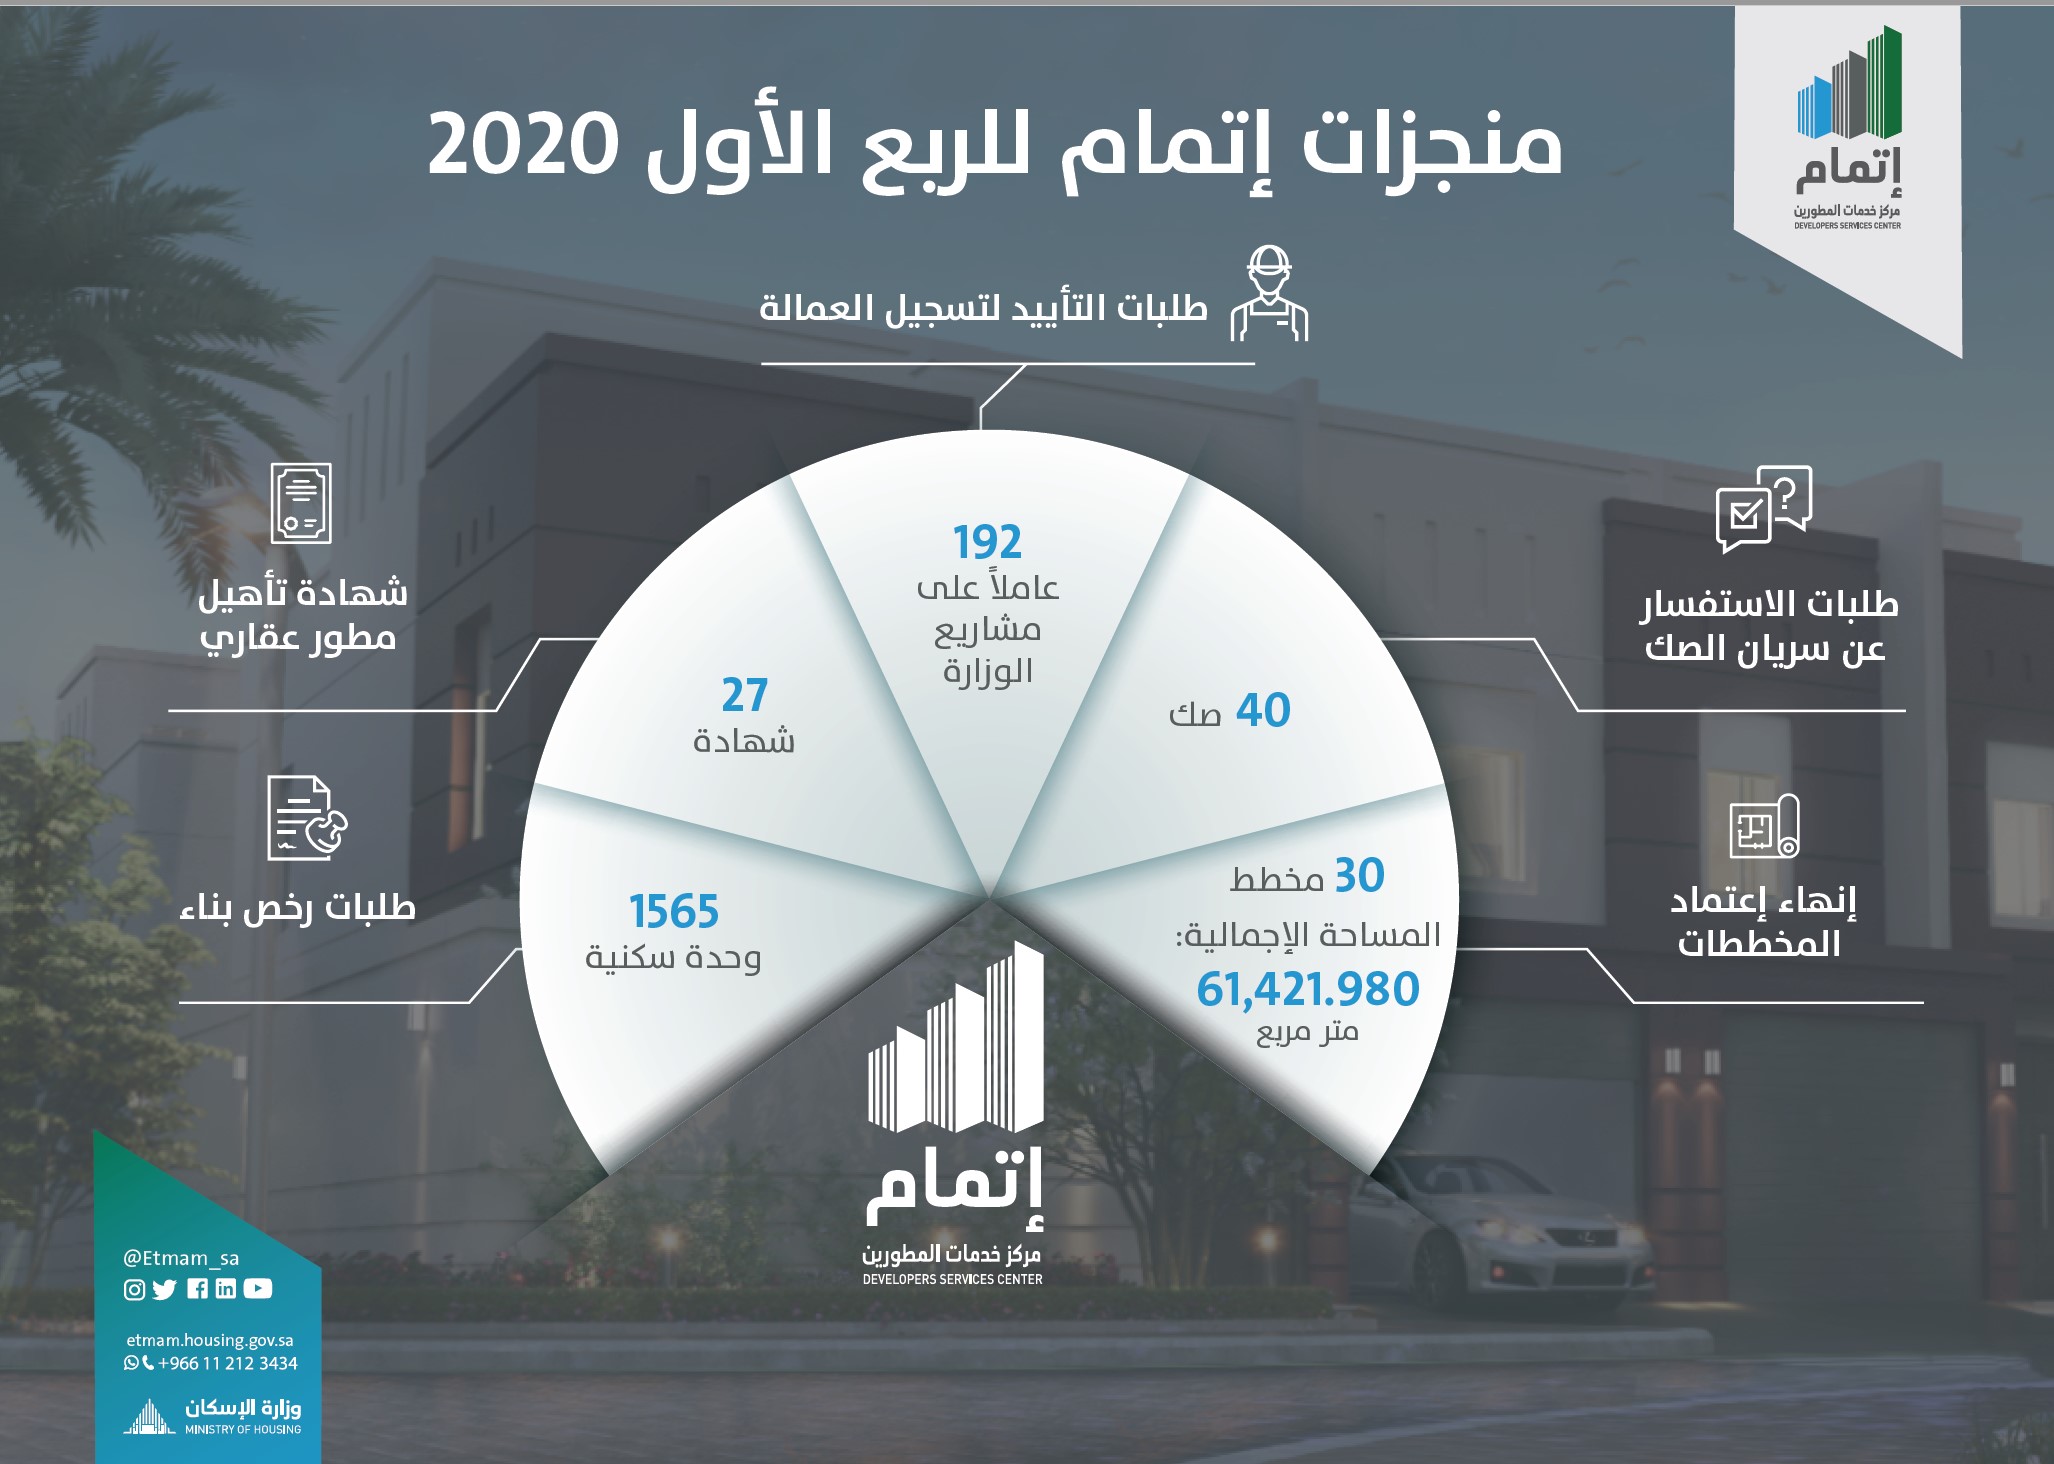 "إتمام" ينهي الربع الأول 2020 باعتماد 30 مخططاً في مختلف مناطق المملكة